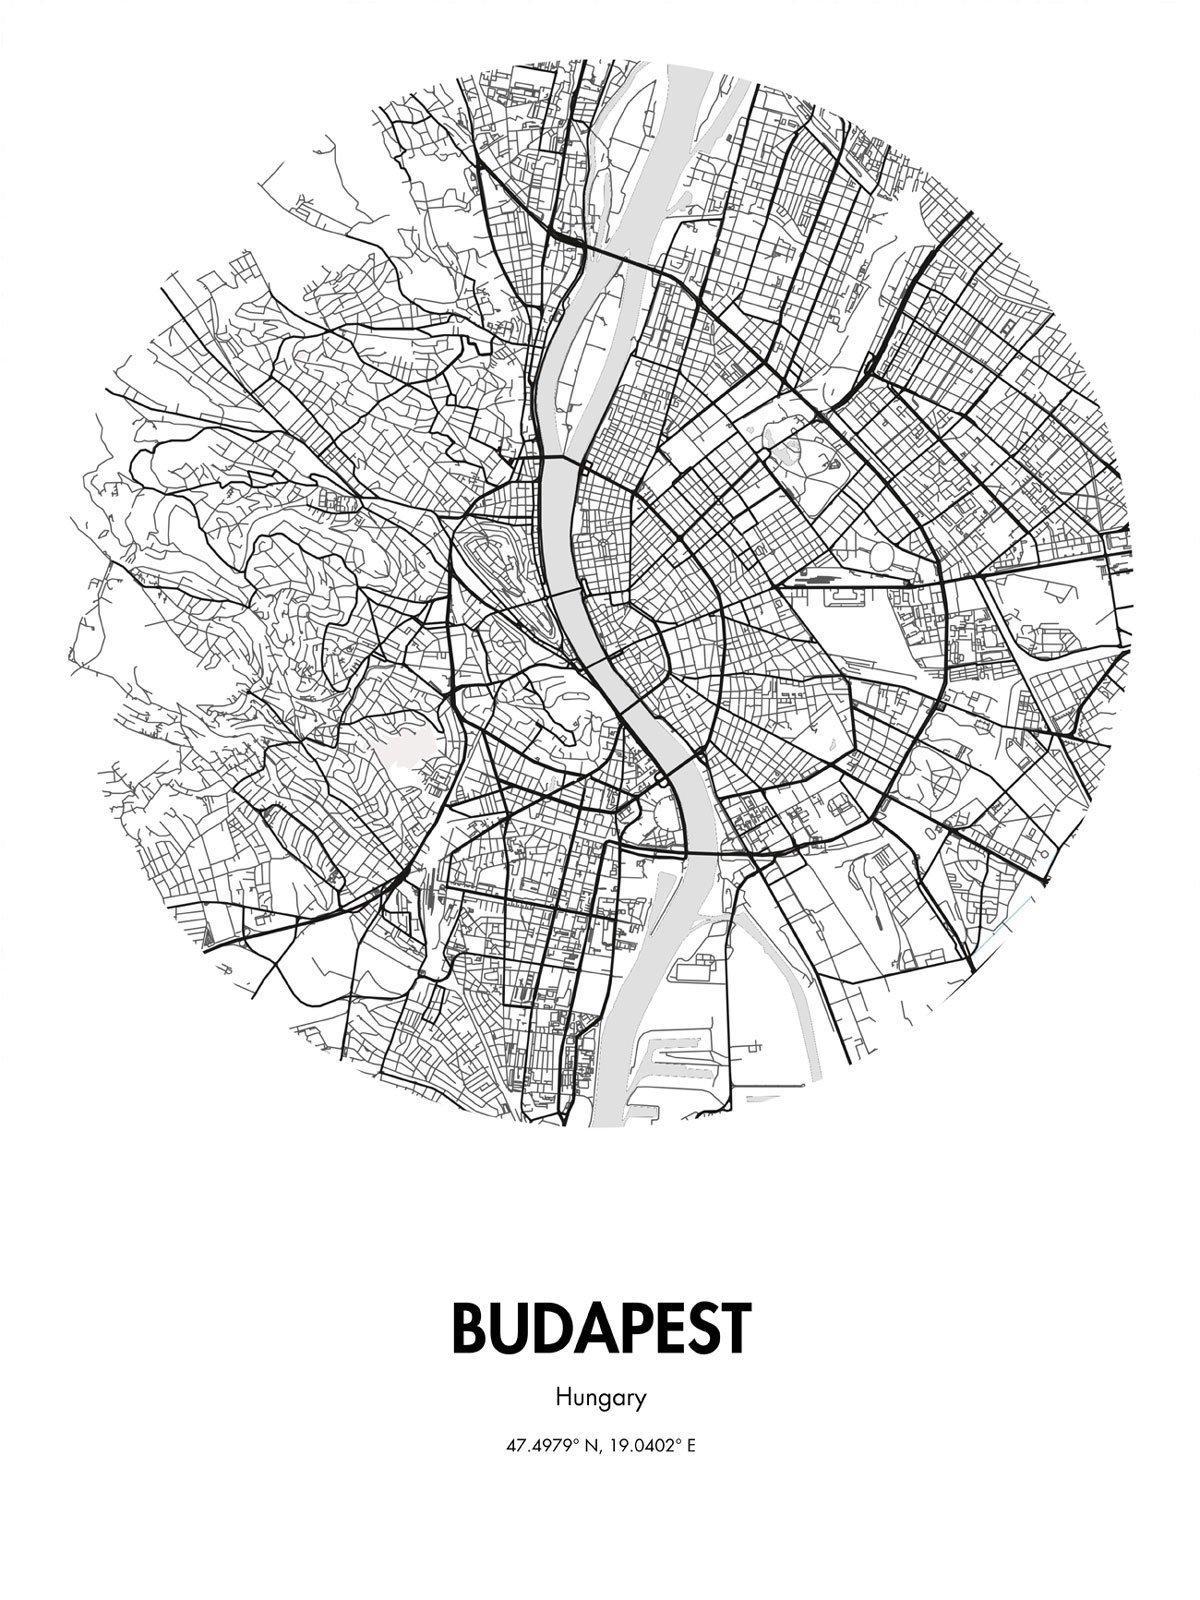 نقشہ بوڈاپیسٹ کے اسٹریٹ آرٹ